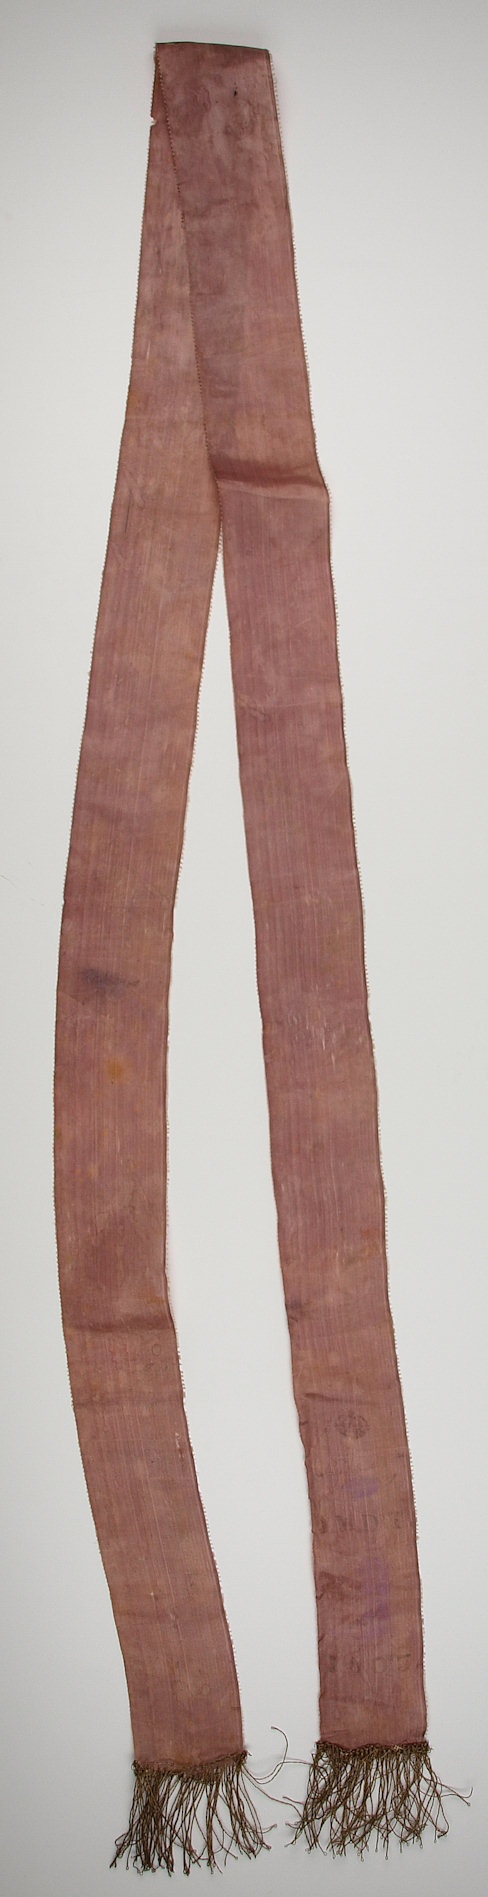 Seidenband mit Tinte beschriftet (stark verblichen), 1803 (Museum Weißenfels - Schloss Neu-Augustusburg CC BY-NC-SA)